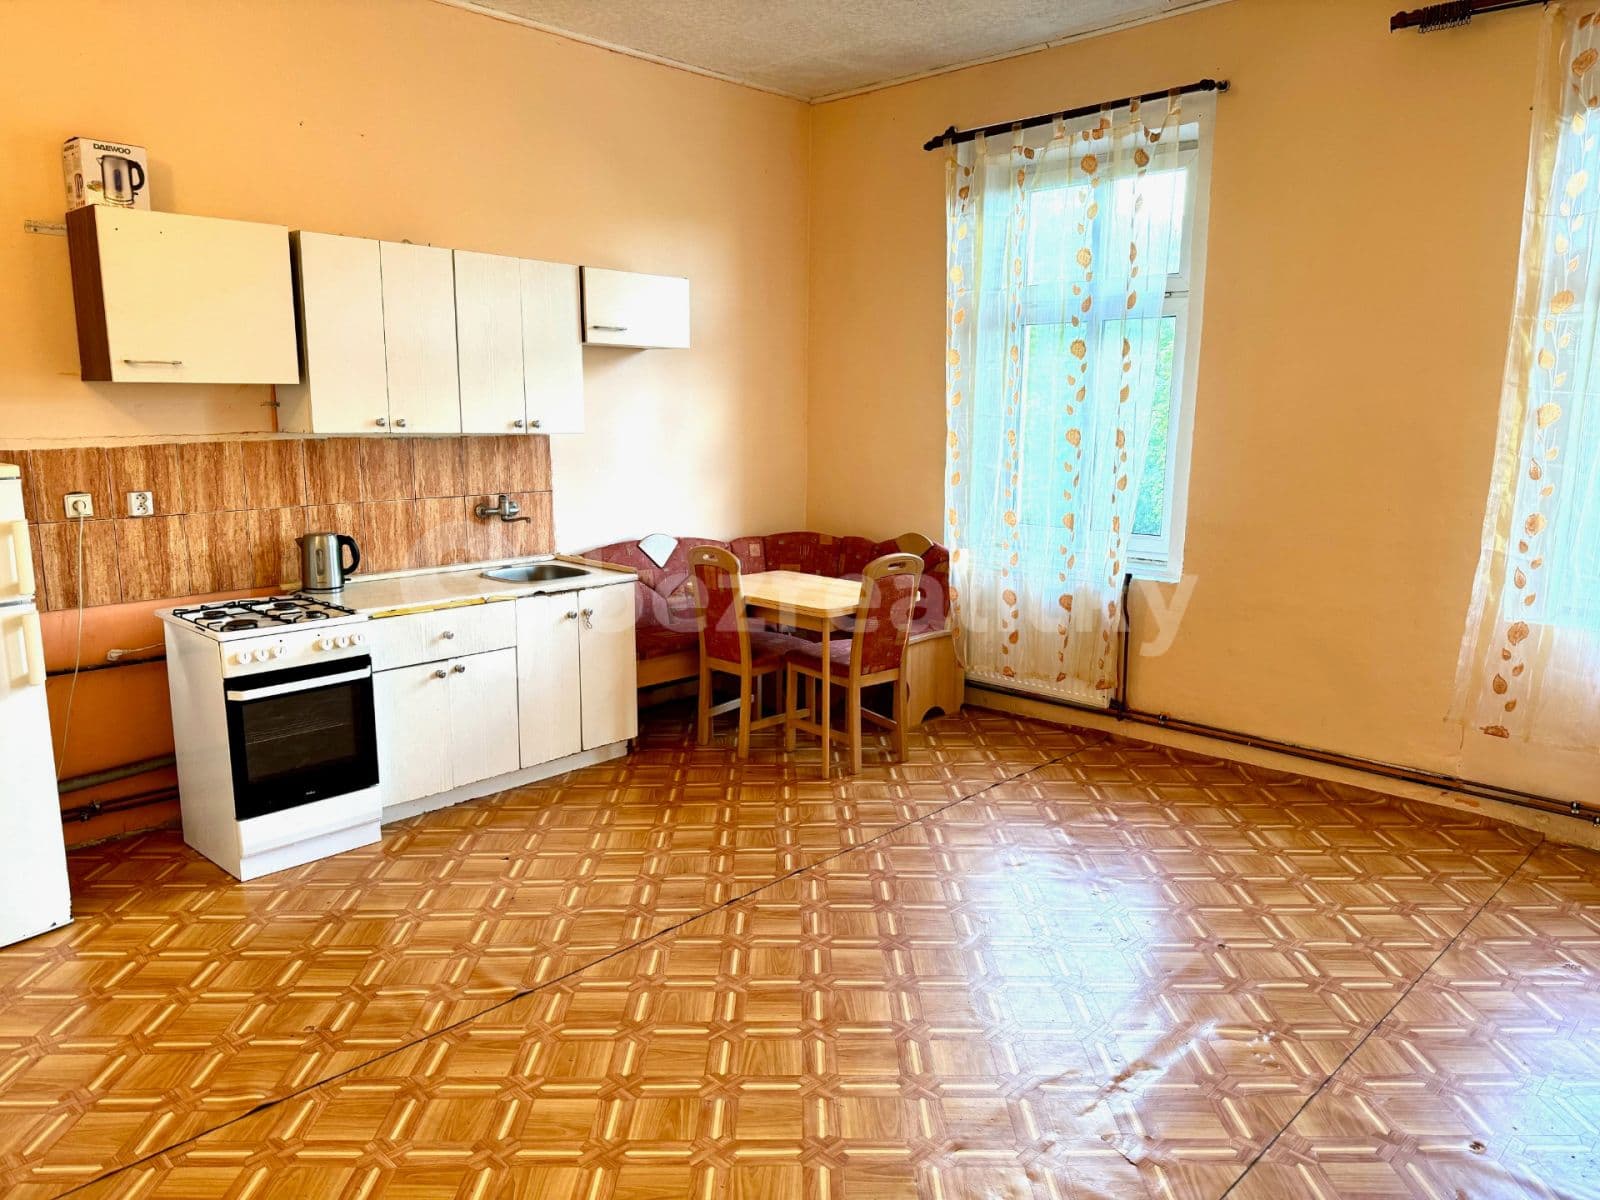 1 bedroom with open-plan kitchen flat to rent, 54 m², Zenklova, Prague, Prague